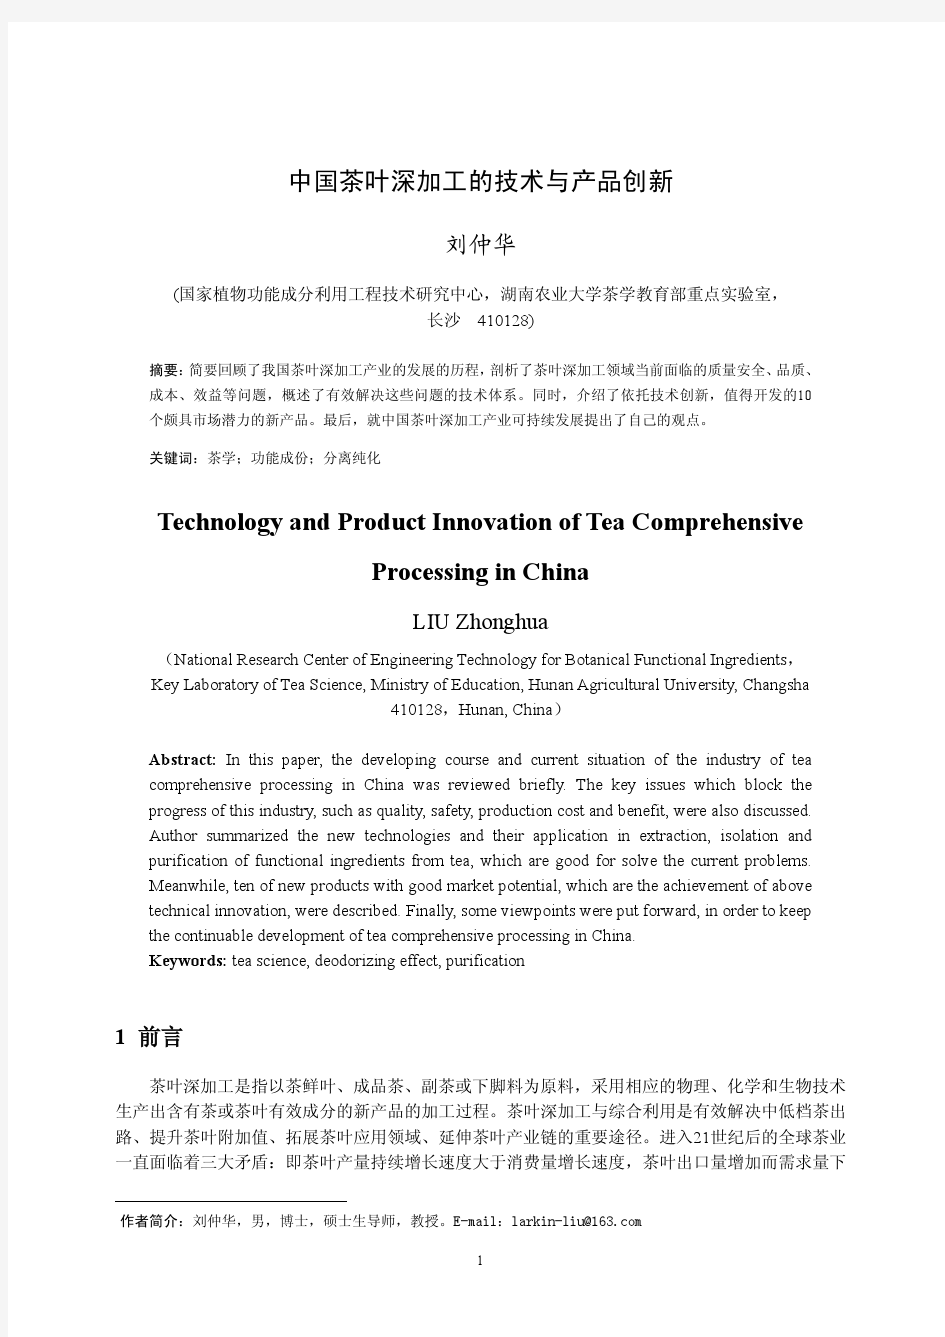 中国茶叶深加工的技术与产品创新